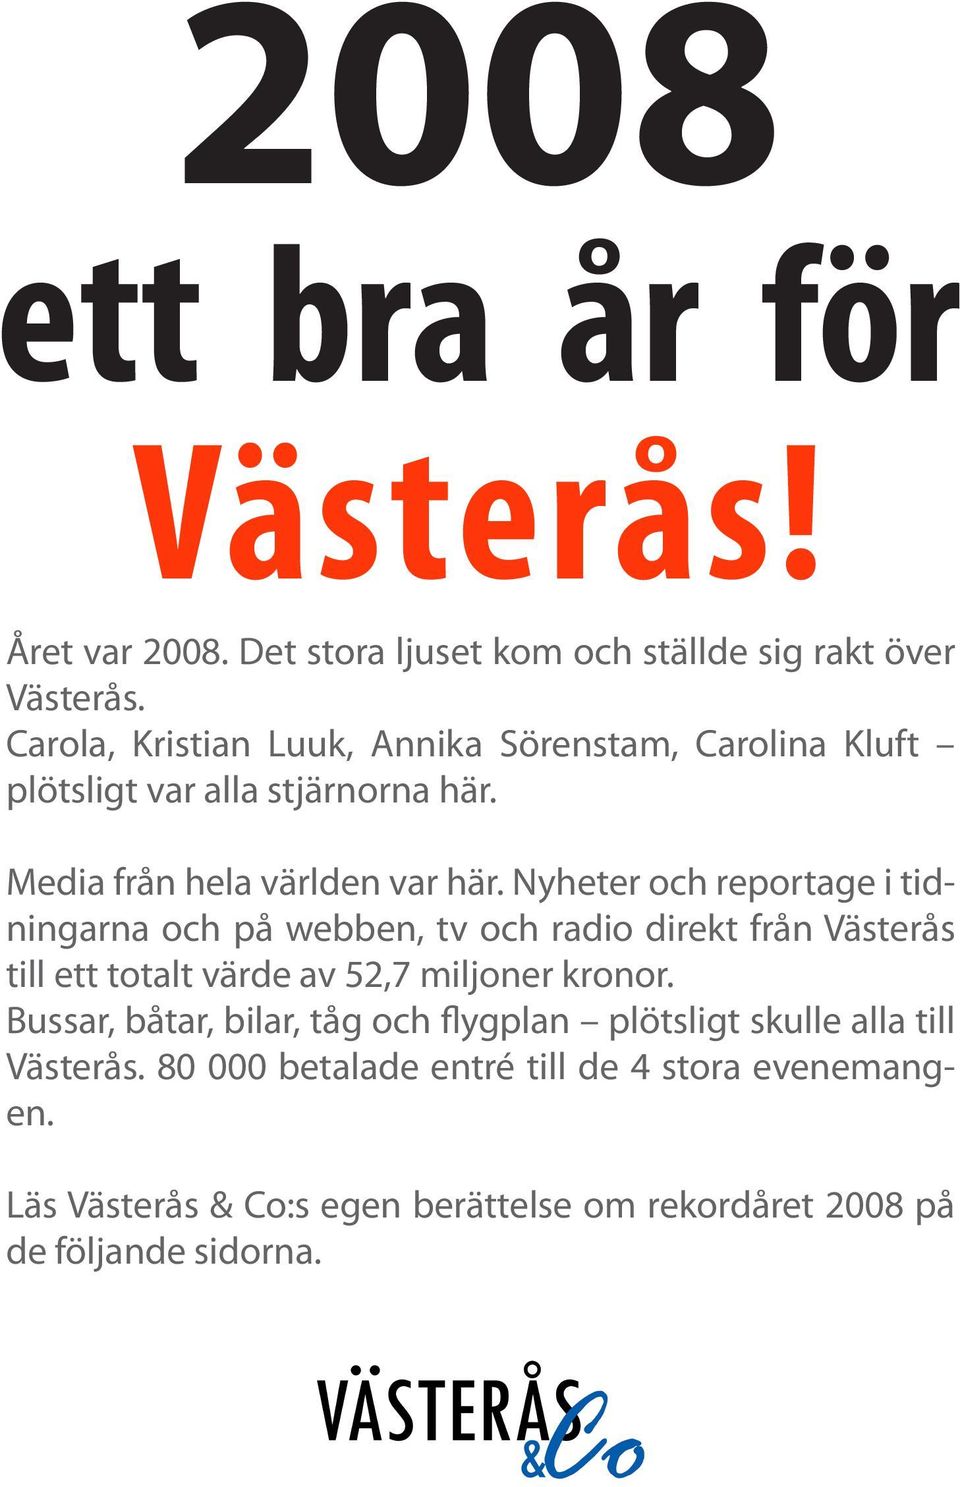 Nyheter och reportage i tidningarna och på webben, tv och radio direkt från Västerås till ett totalt värde av 52,7 miljoner kronor.